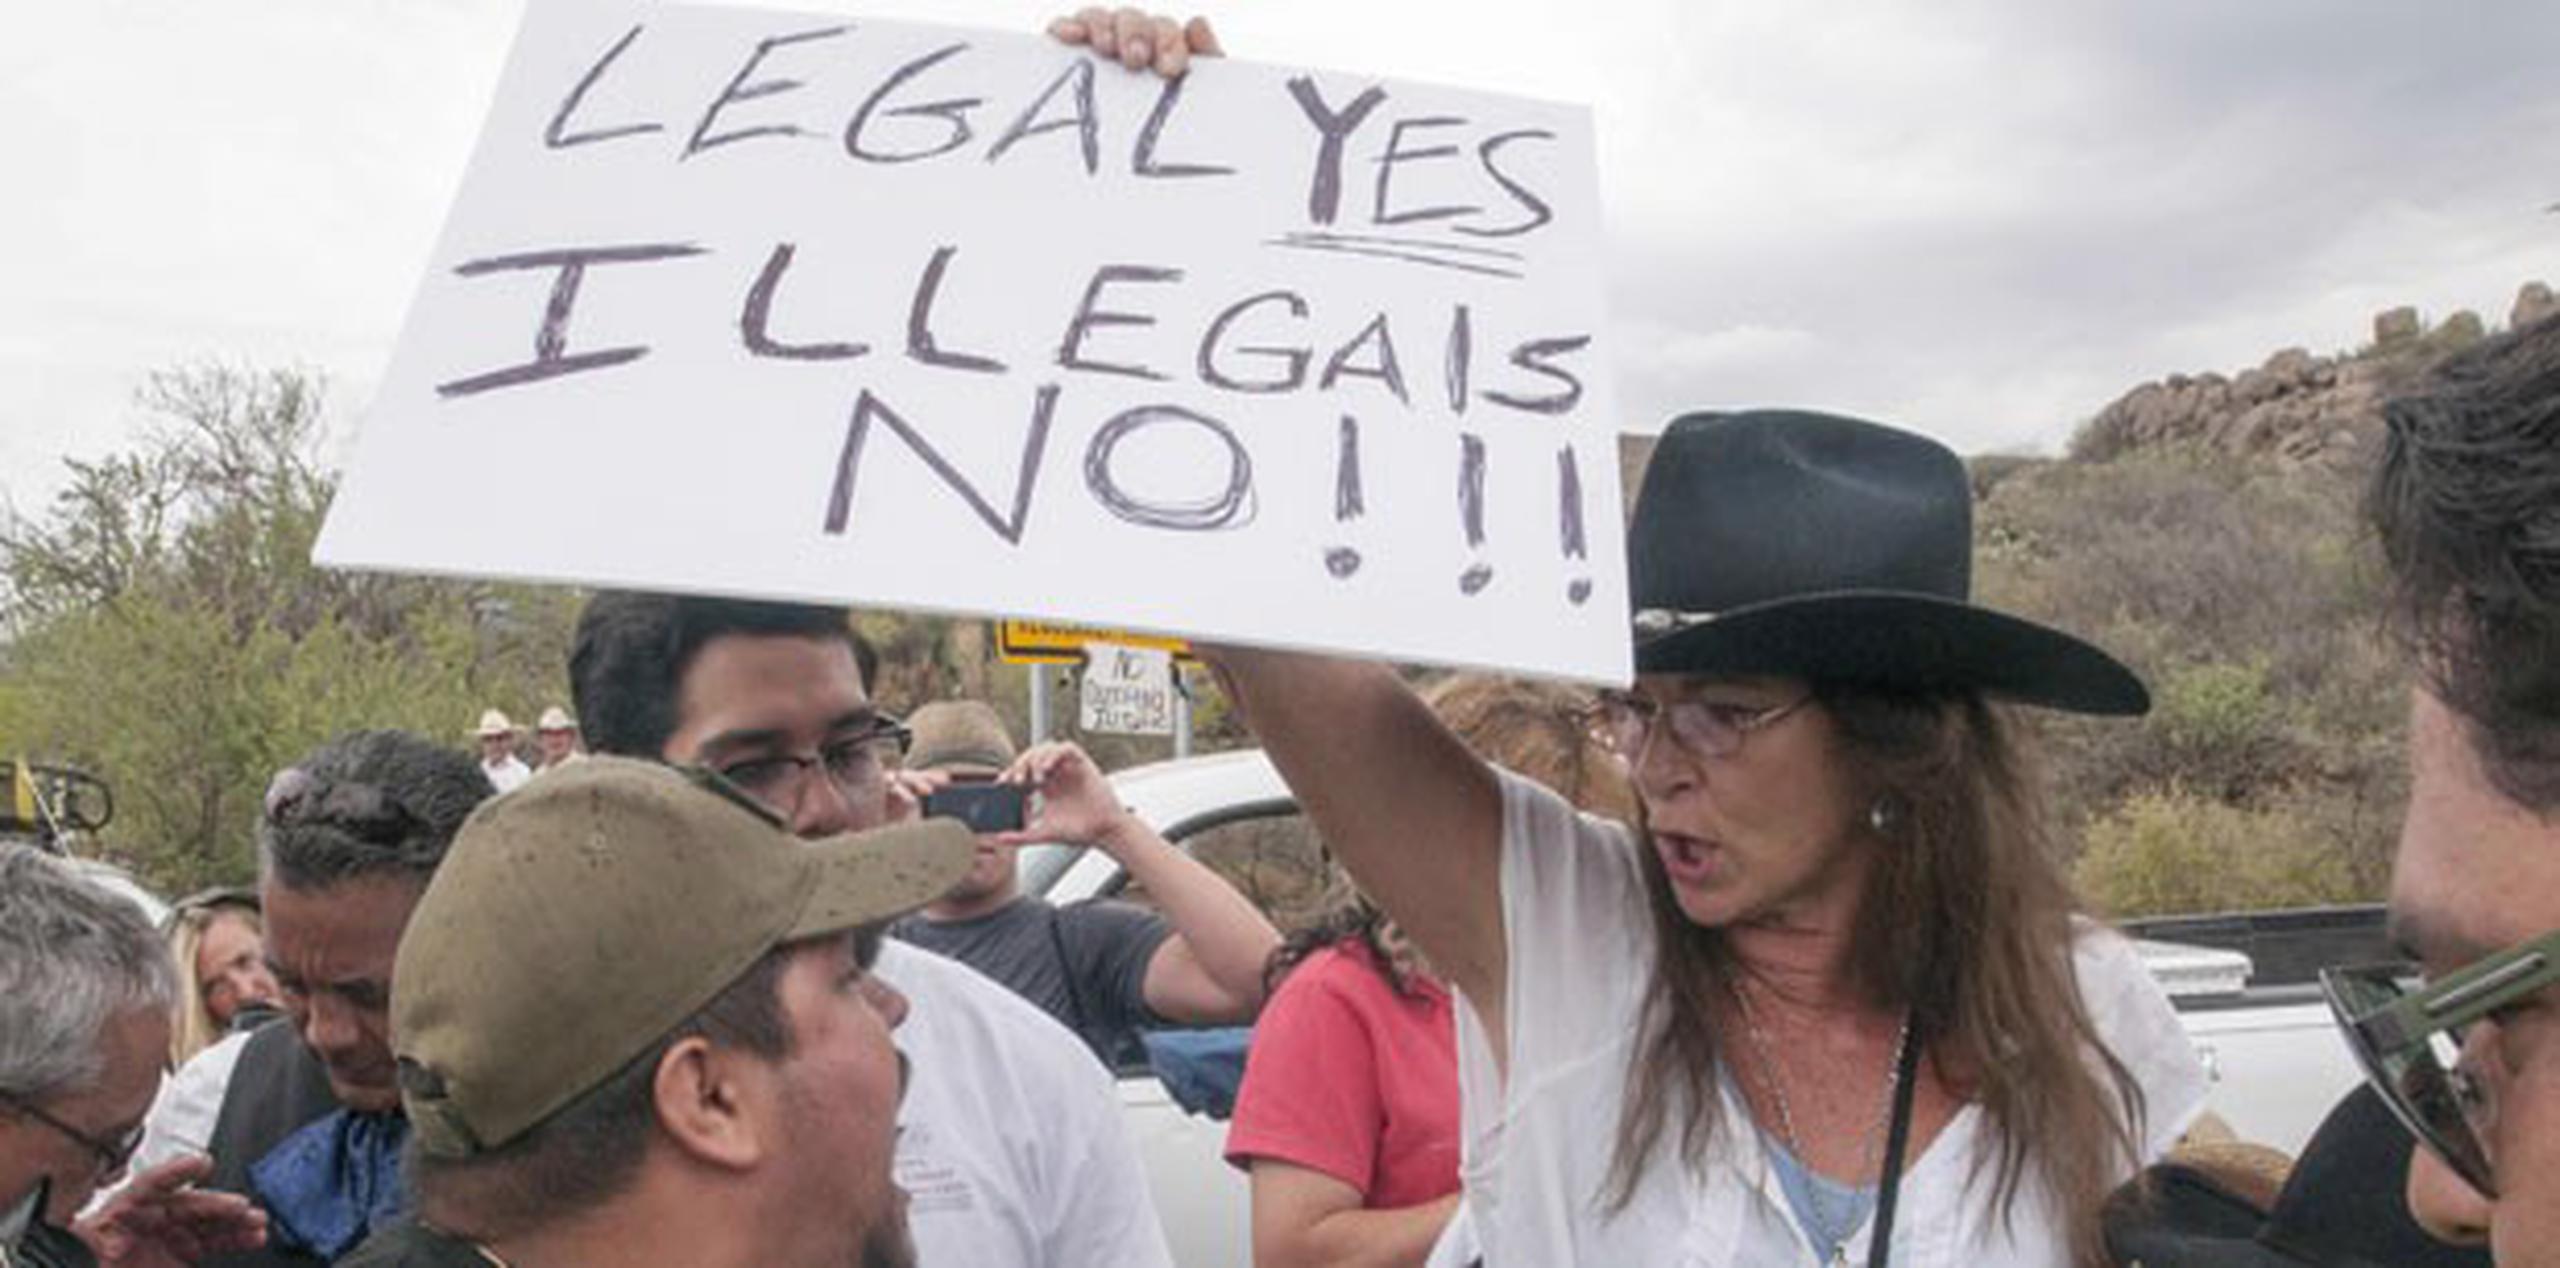 Grupos proinmigrantes se han enfrentado a otros en contra de la inmigración ilegal.(EFE/Gary Williams)